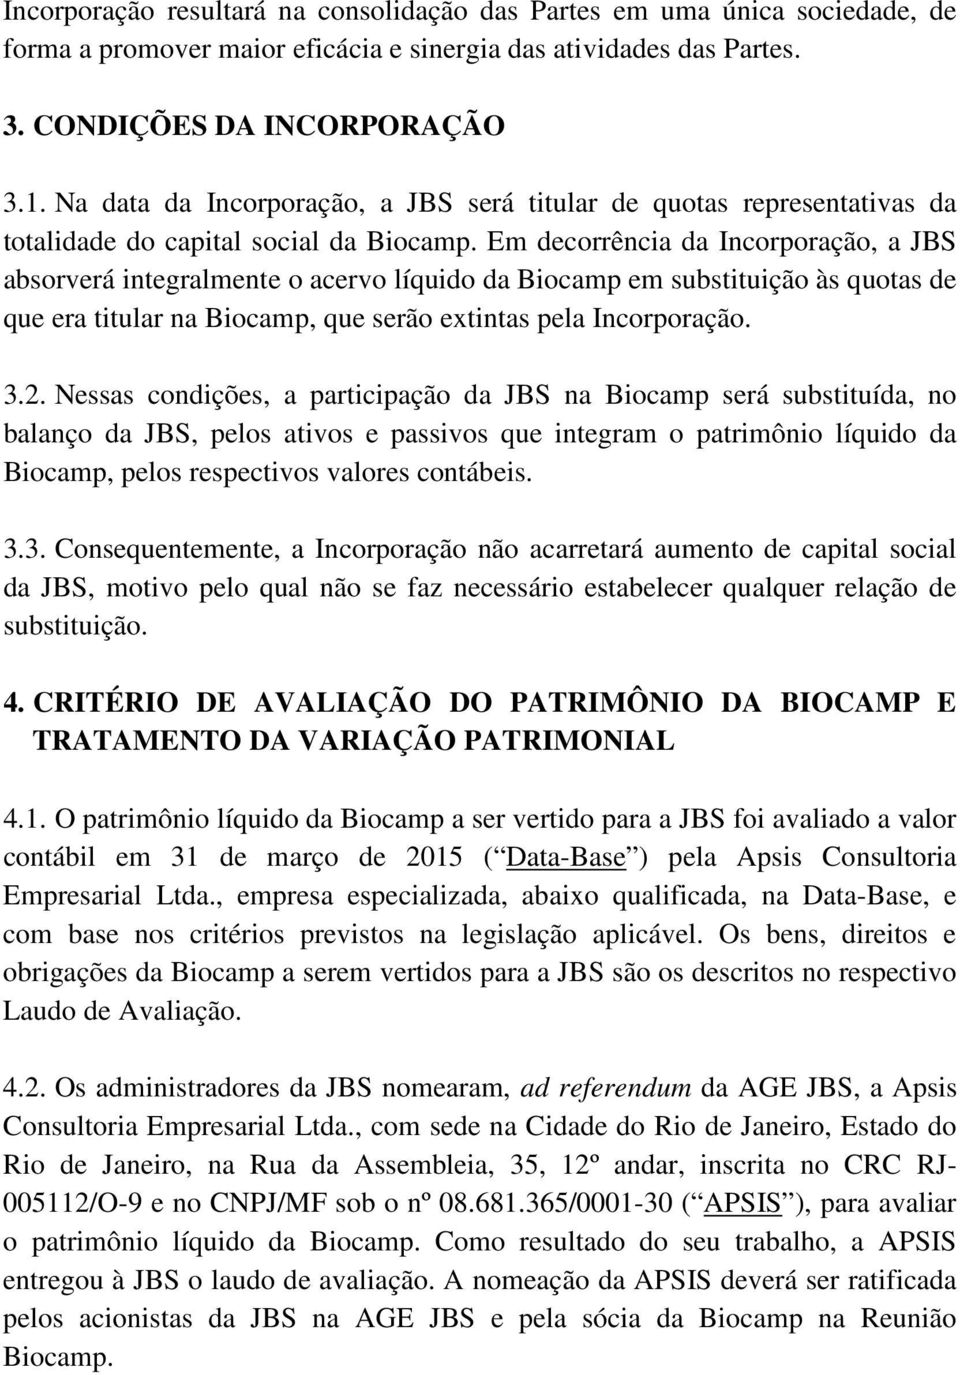 Em decorrência da Incorporação, a JBS absorverá integralmente o acervo líquido da Biocamp em substituição às quotas de que era titular na Biocamp, que serão extintas pela Incorporação. 3.2.